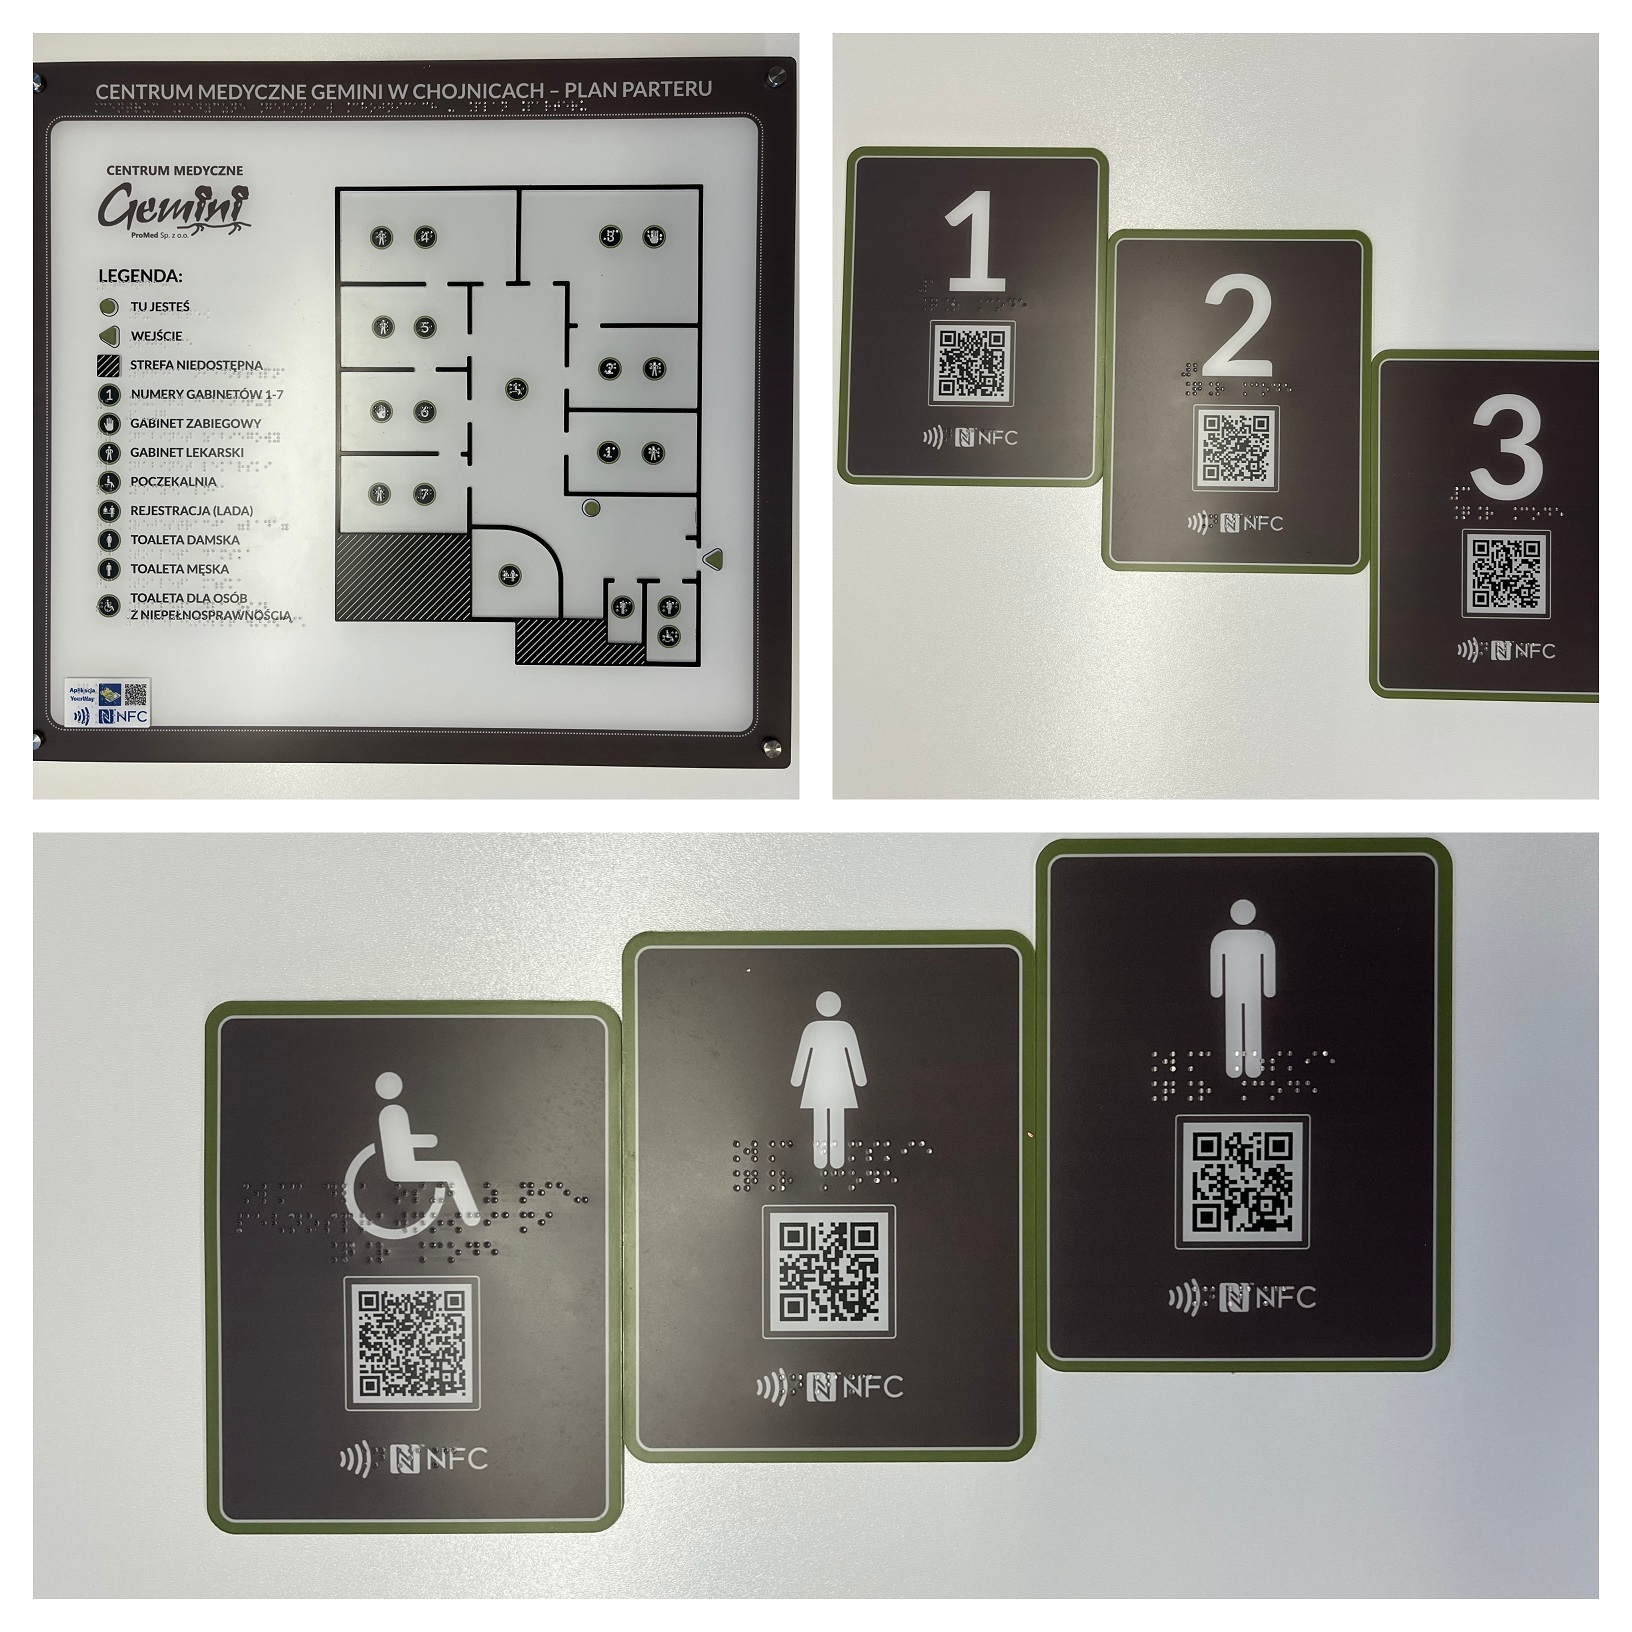 Tyflograficzny plan informacyjny ze znacznikami YourWay Beacon i NFC, tabliczki informacyjne w brajlu ze znacznikami NFC, część z piktogramami, w siedzibie Centrum Medycznego Gemini w Chojnicach. 